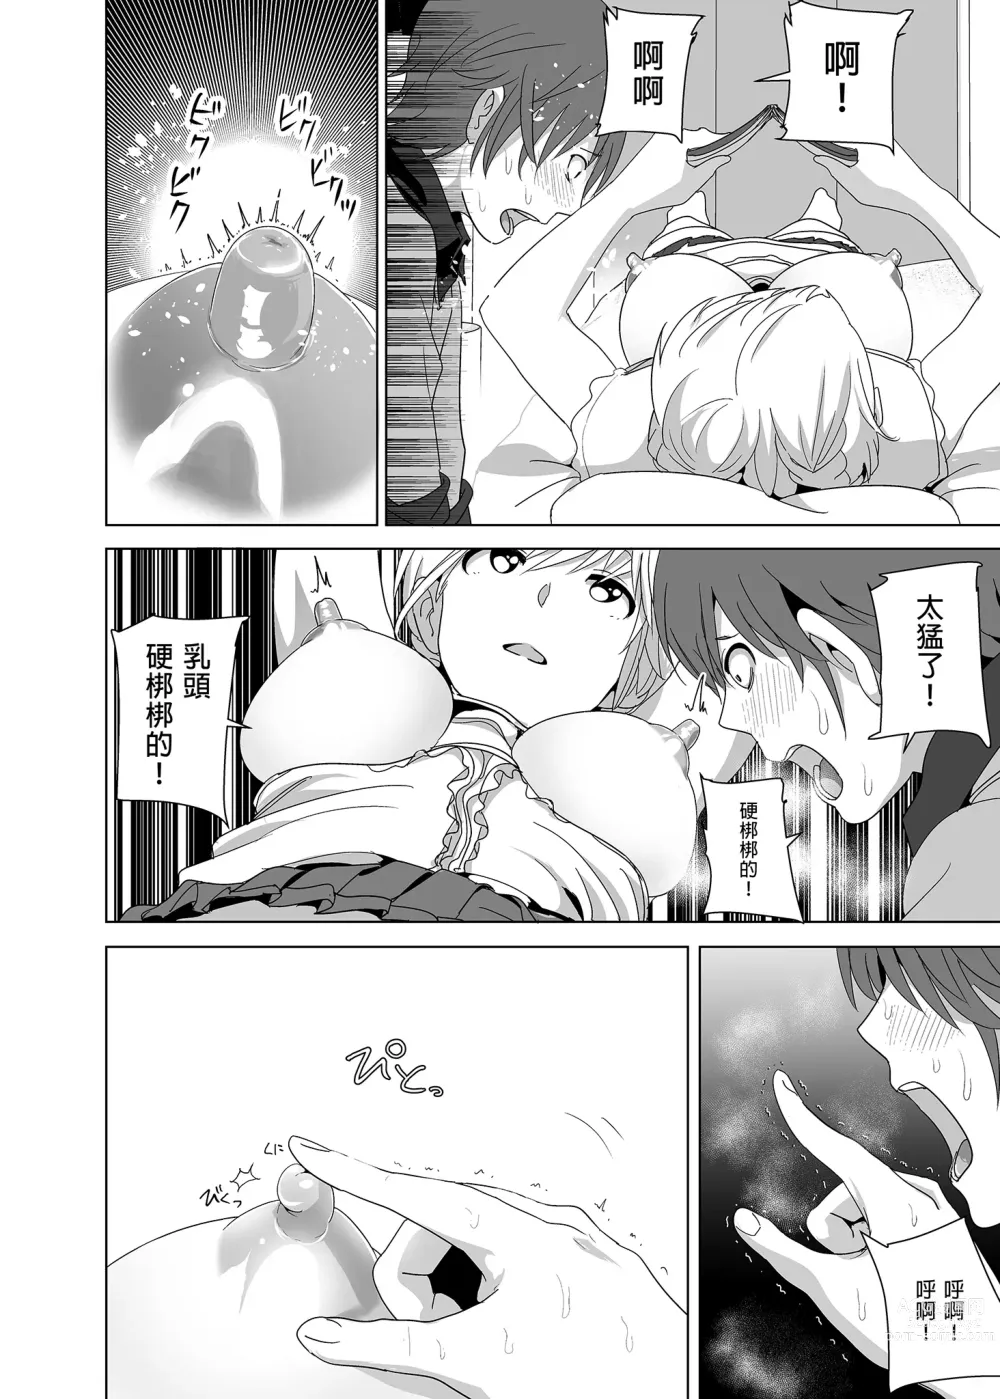 Page 15 of doujinshi 關於妹妹胸部 整顆露出來的那件事 總集篇1 (decensored)